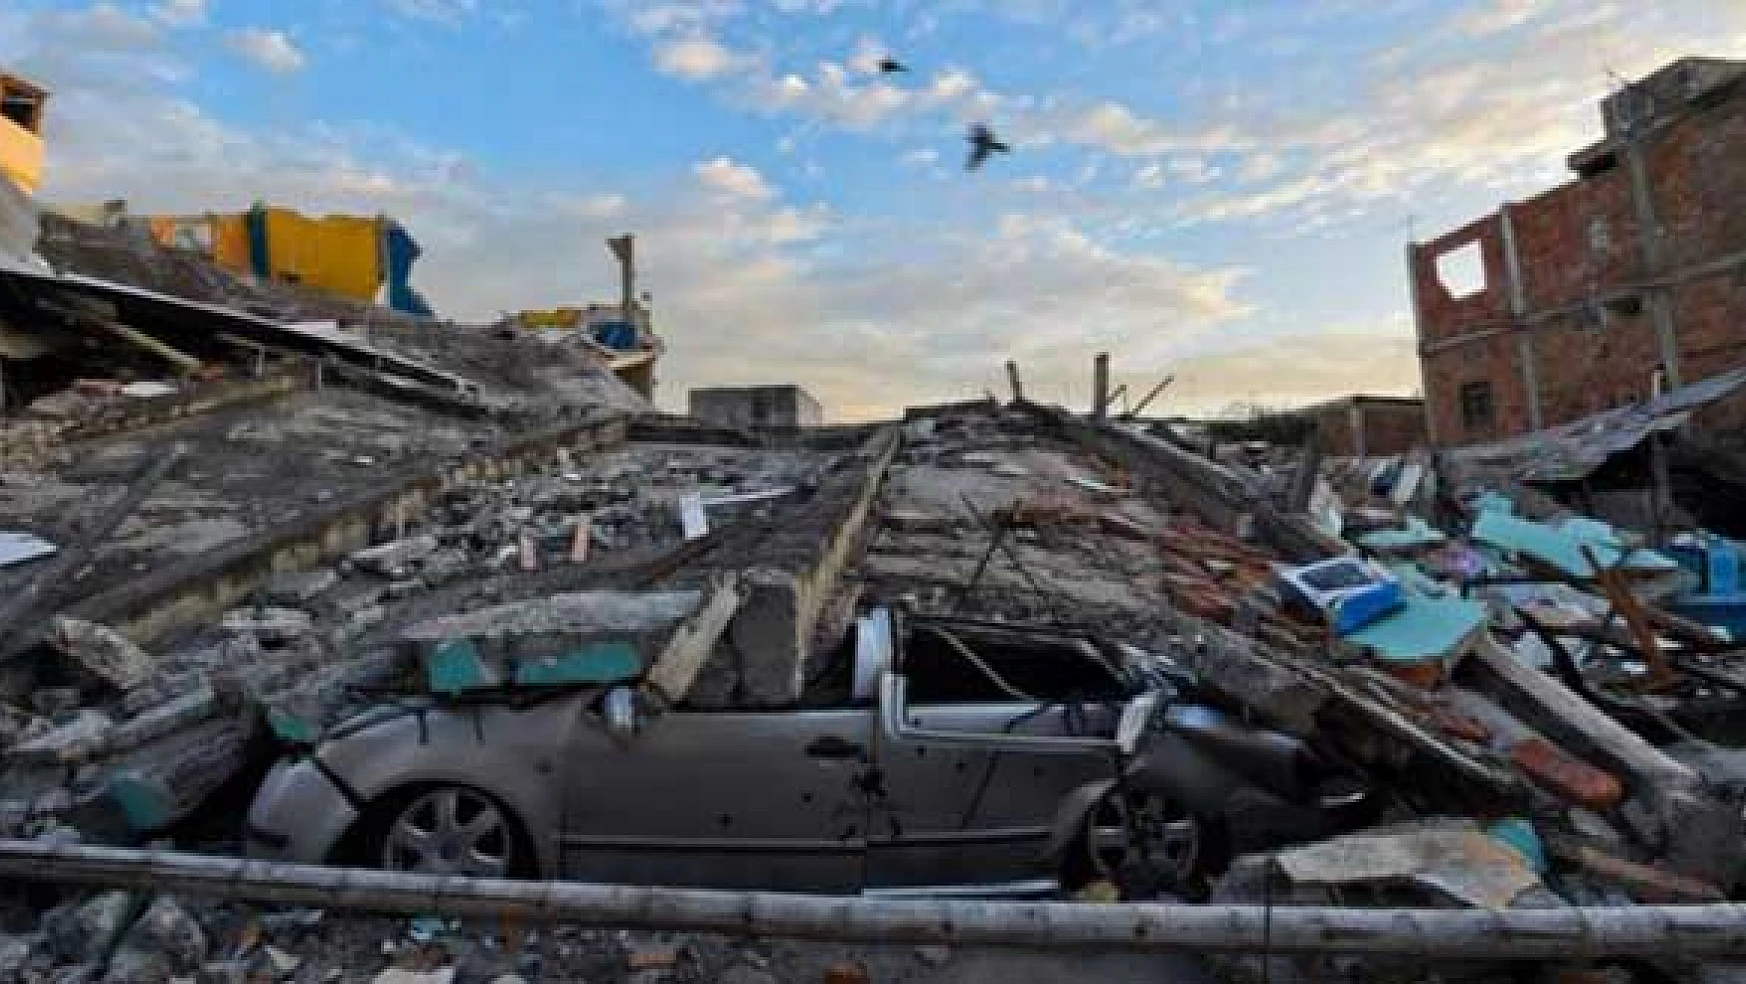 Ekvadordaki depremde ölü sayısı 272ye yükseldi